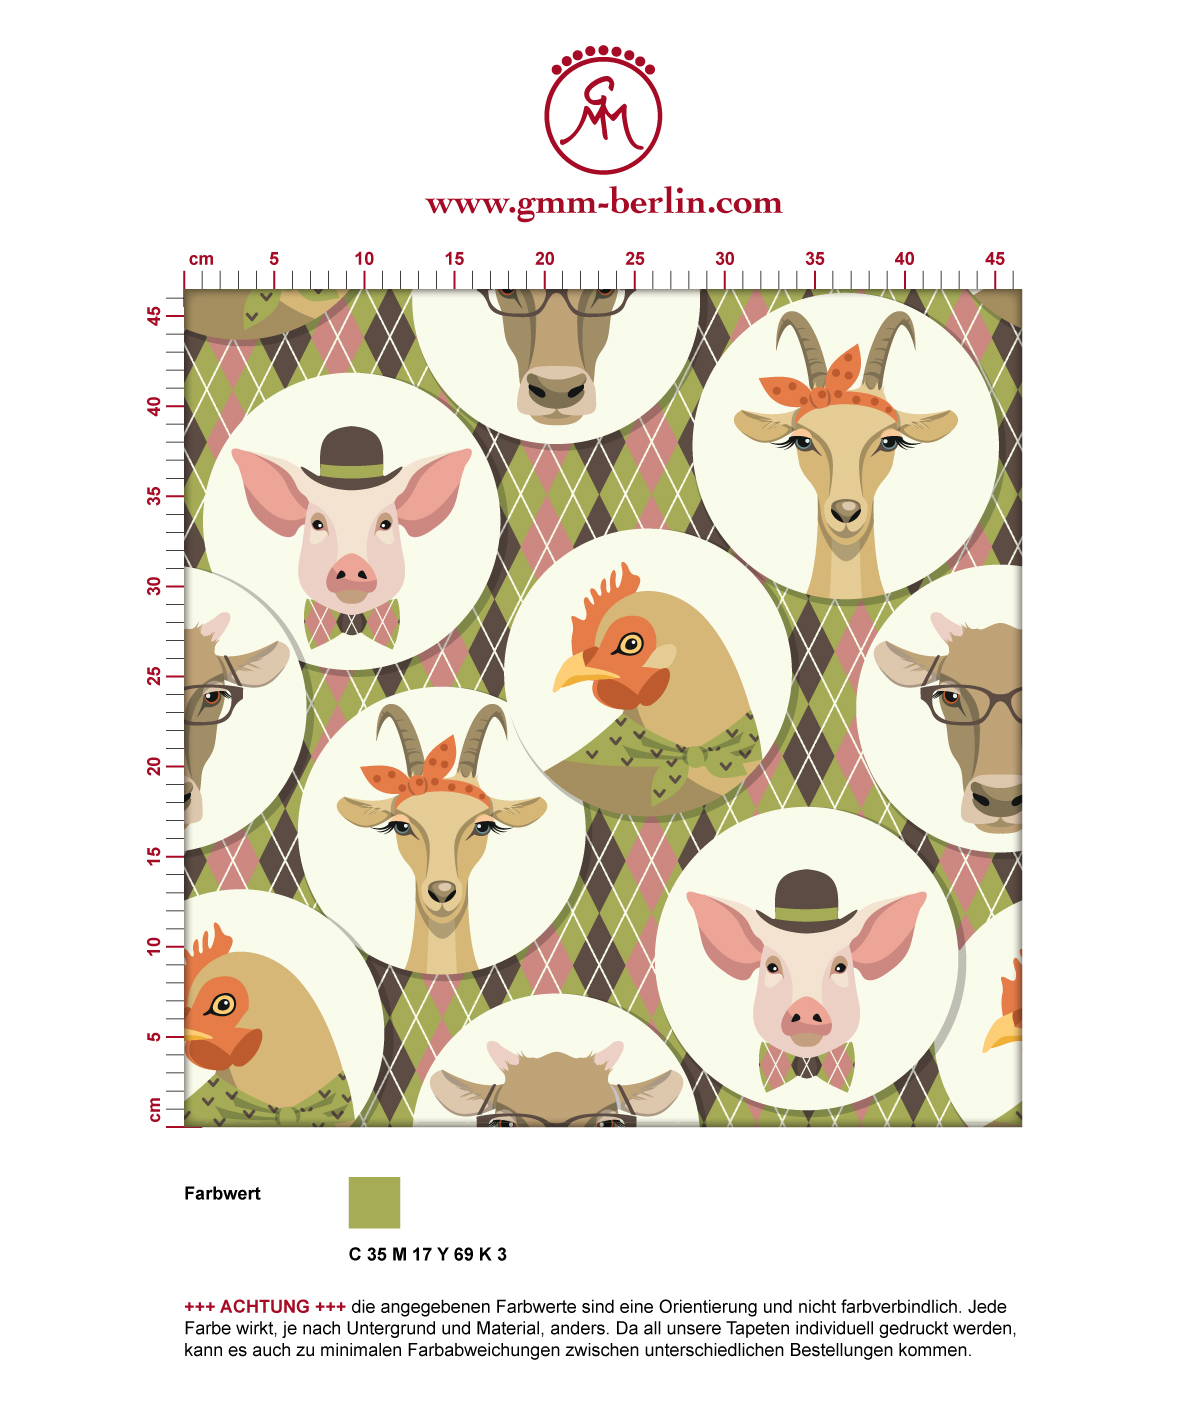 Moderne Tapete "Funny Portrait Gallery" mit Schweinen, Ziegen und Kühen auf Schotten Karo in oliv - groß angepasst an CMYK Wandfarben. Aus dem GMM-BERLIN.com Sortiment: Schöne Tapeten in der Farbe: dunkel braun